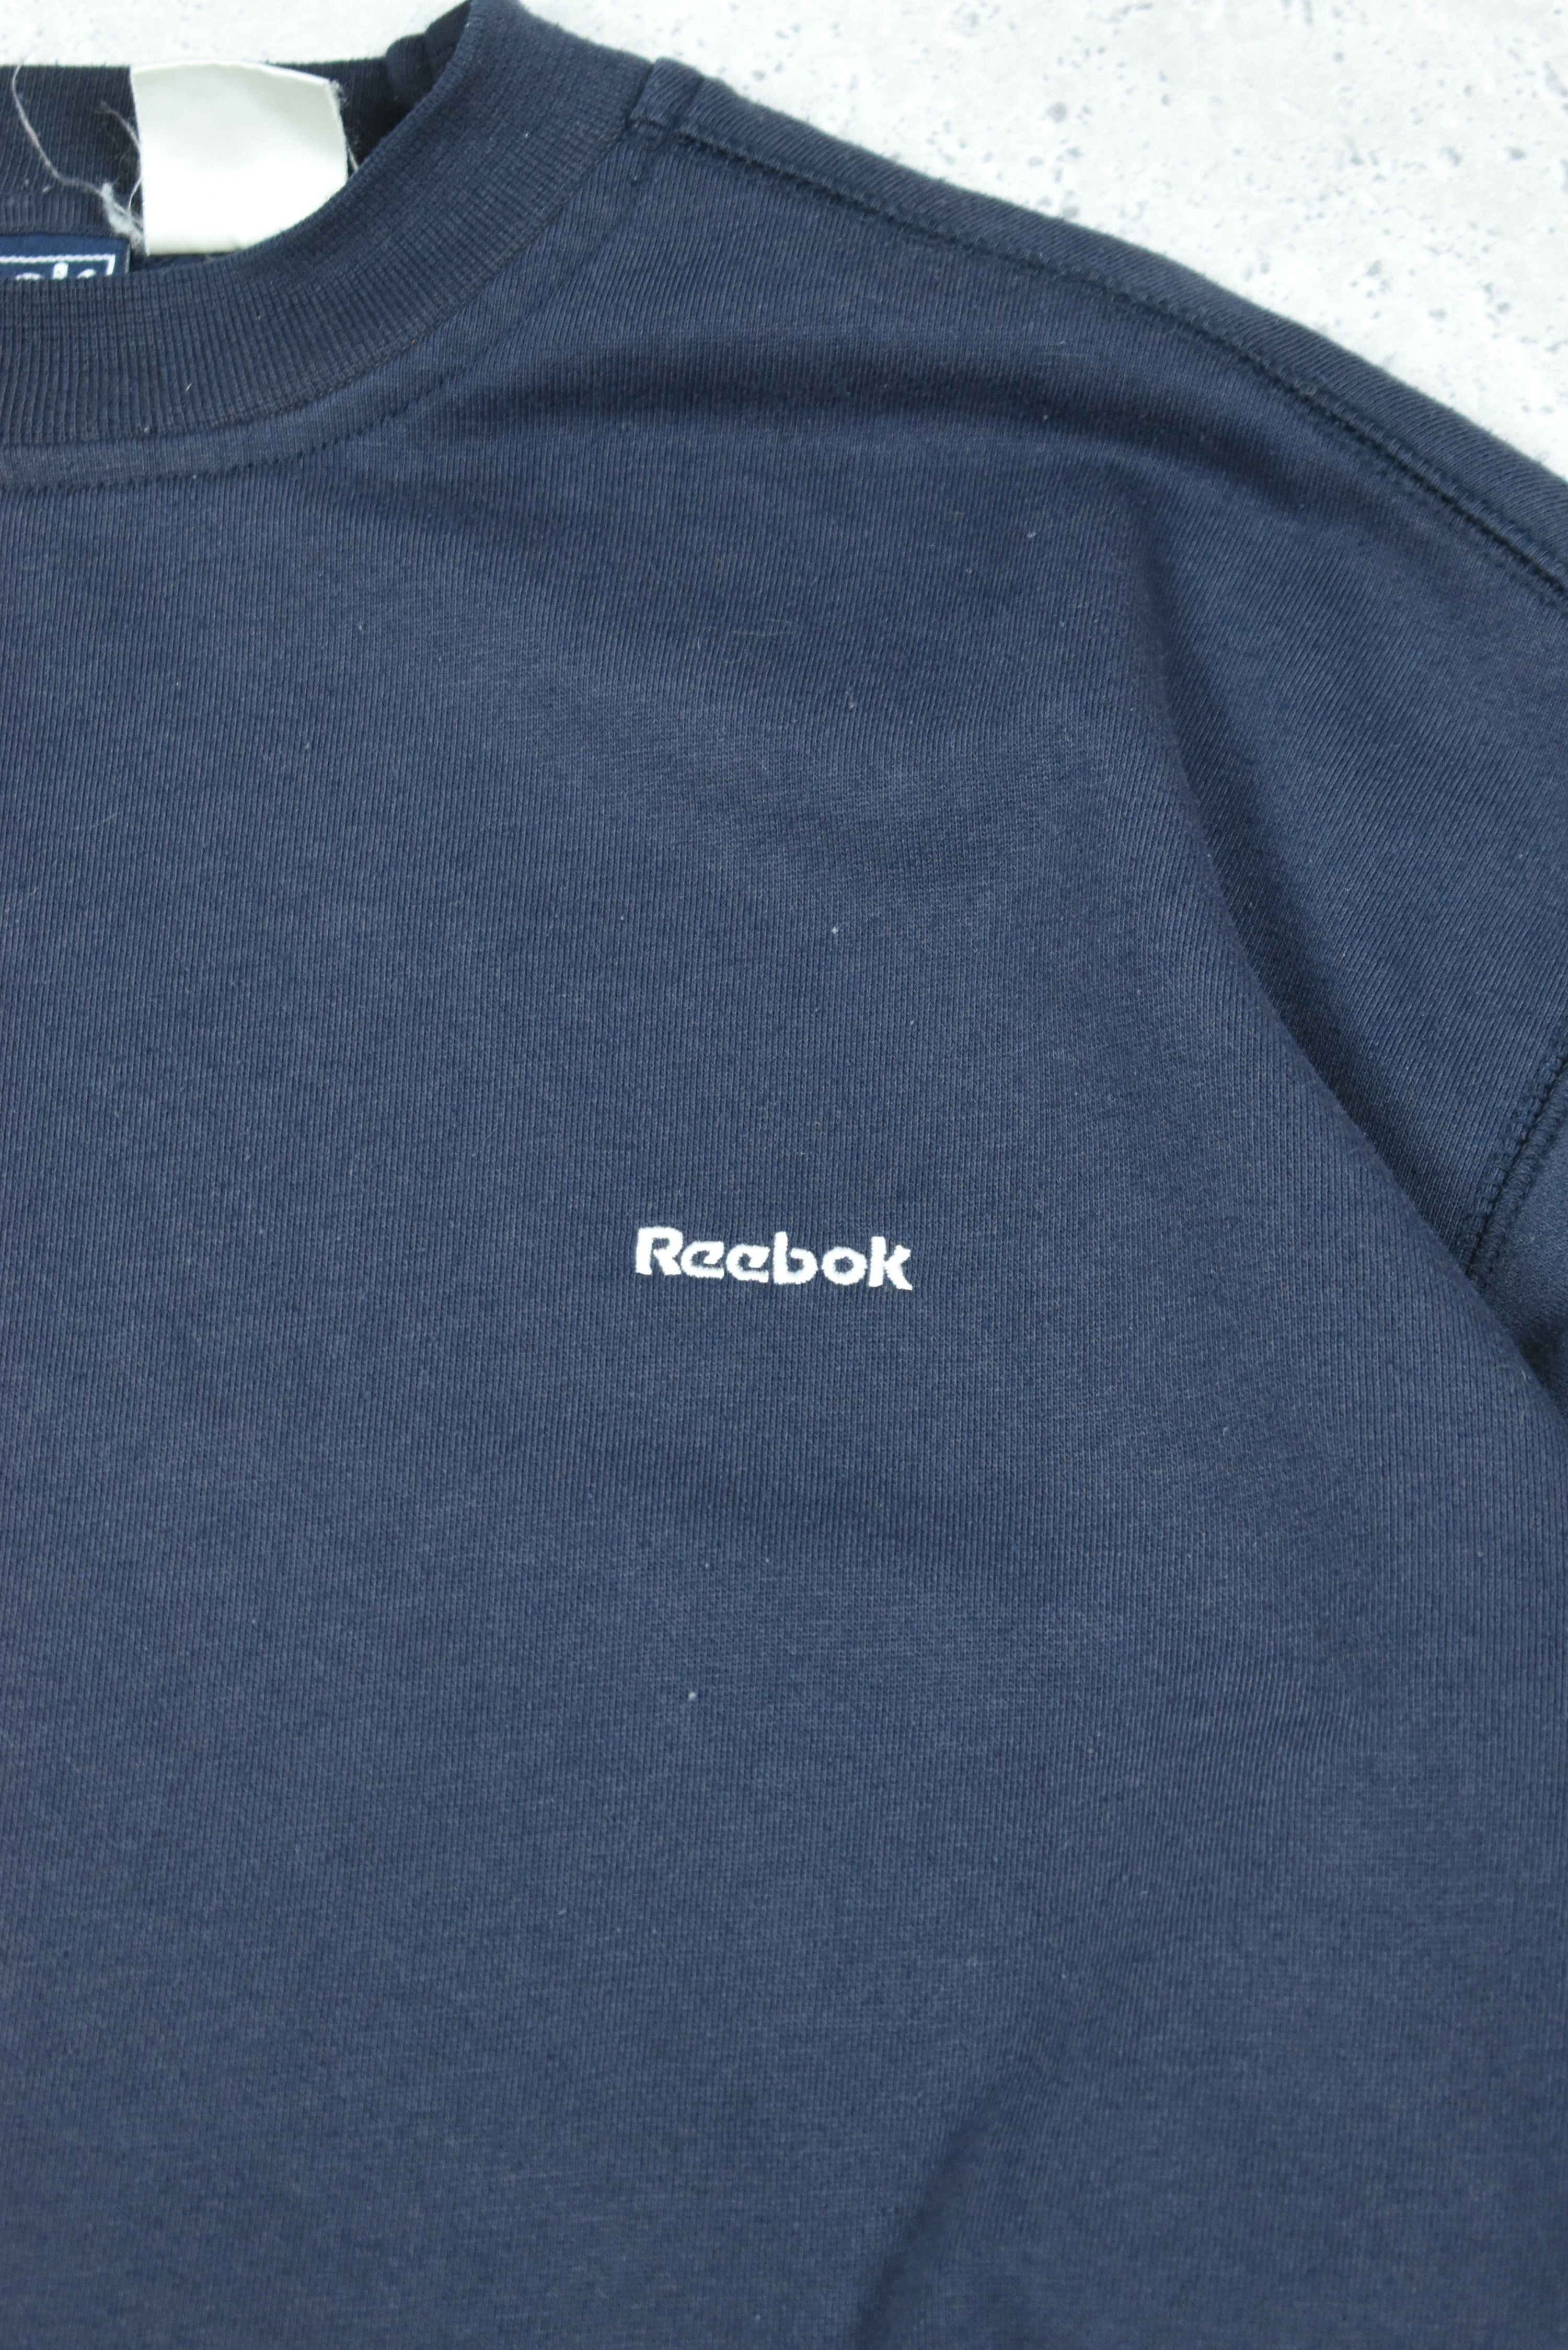 Vintage Reebok Embroidered Logo Sweatshirt Medium